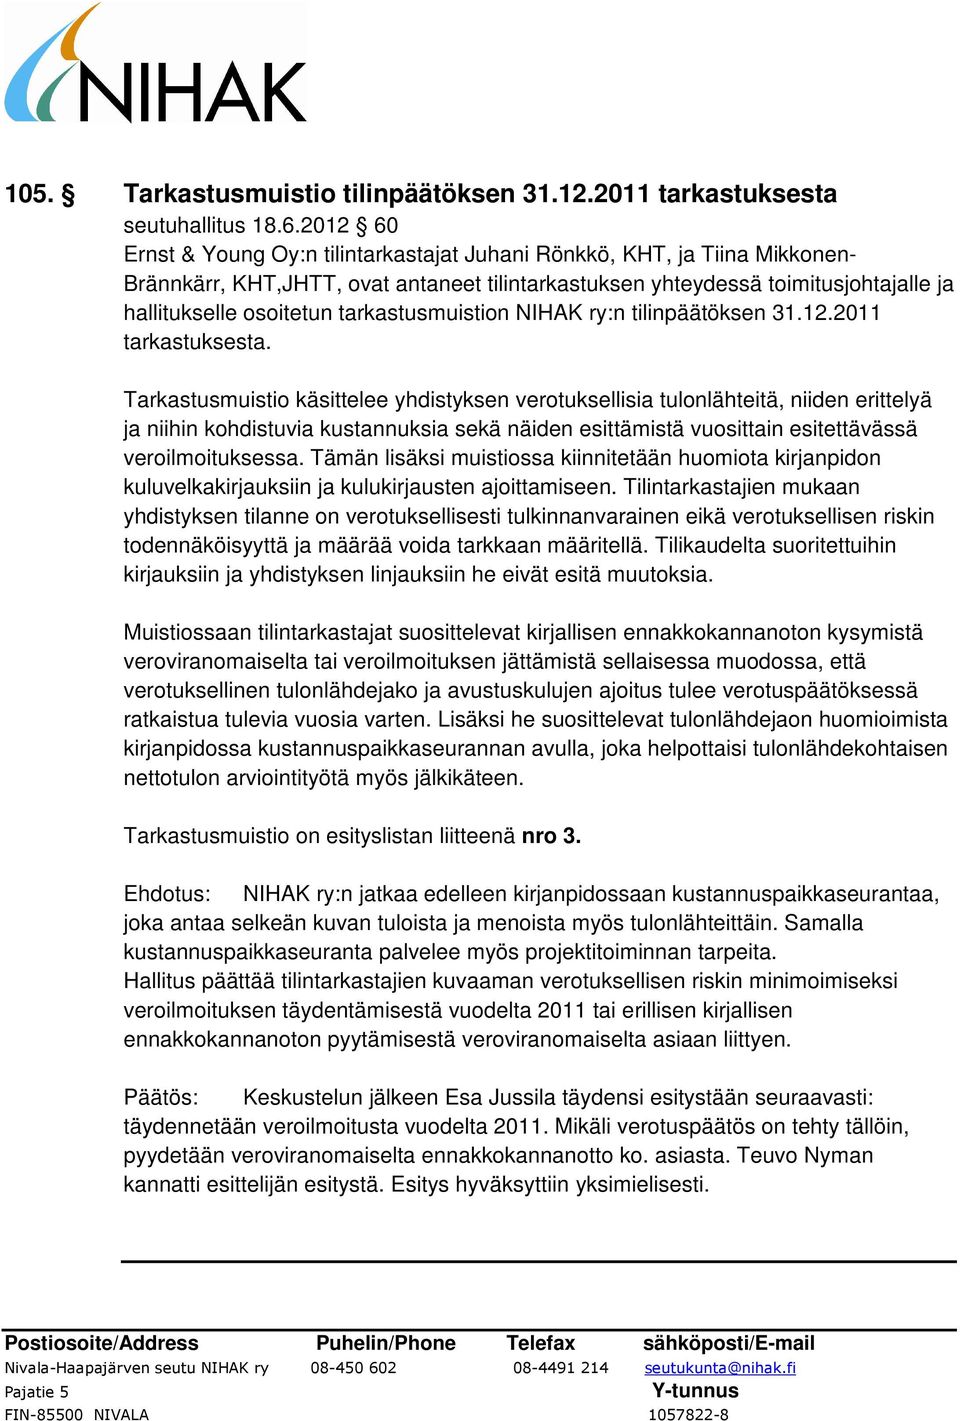 tarkastusmuistion NIHAK ry:n tilinpäätöksen 31.12.2011 tarkastuksesta.